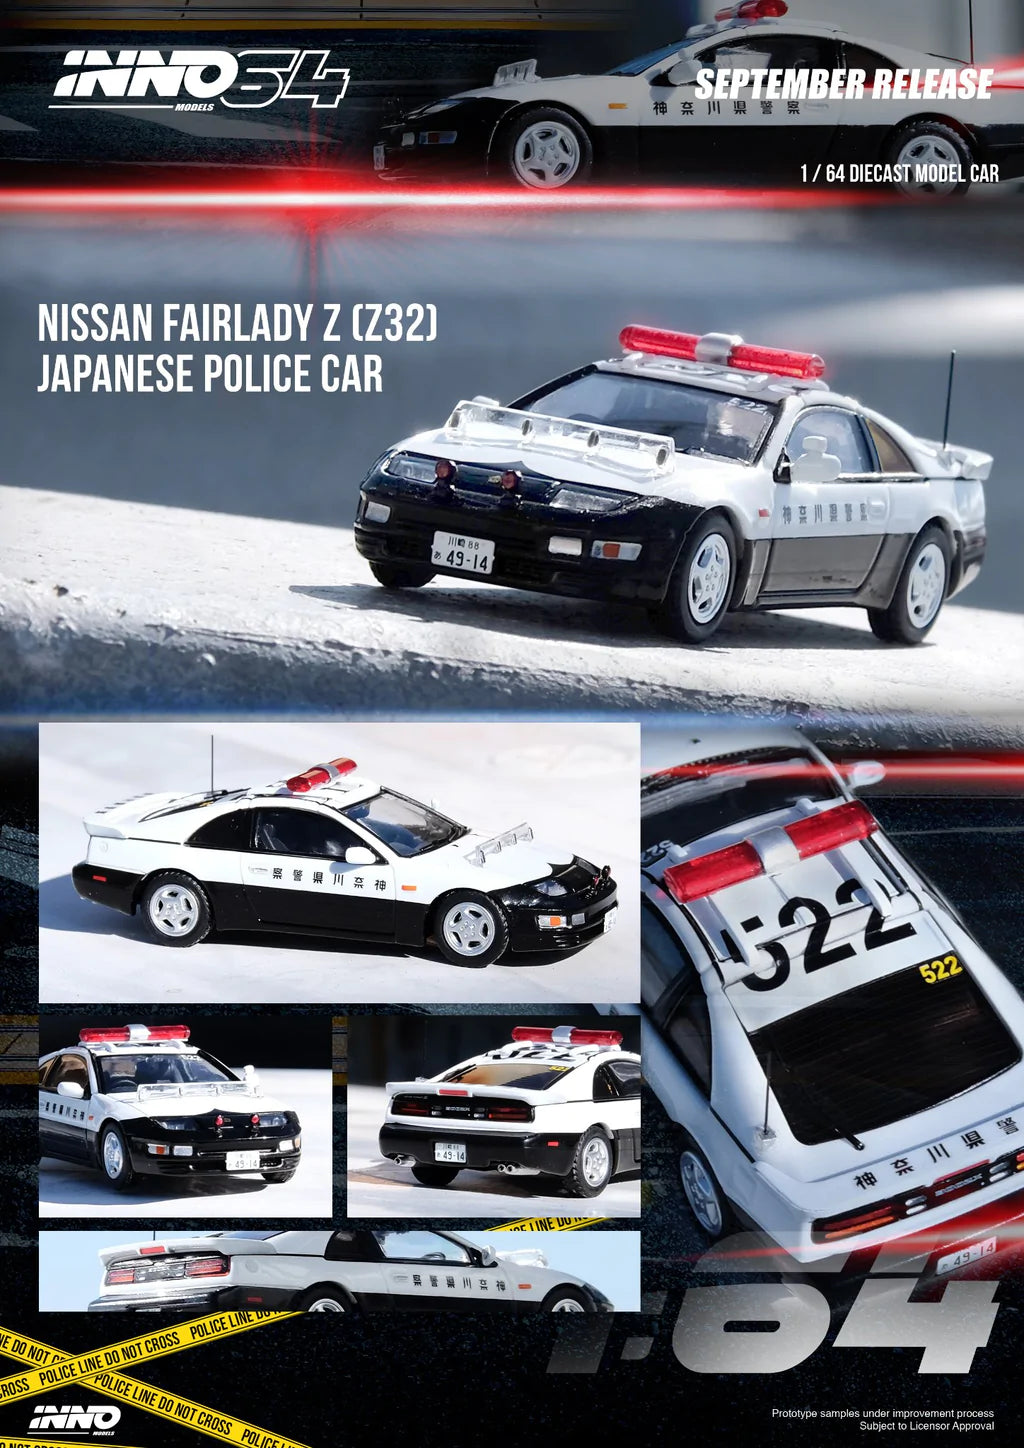 Nissan Fairlady Z Japanese Police Car